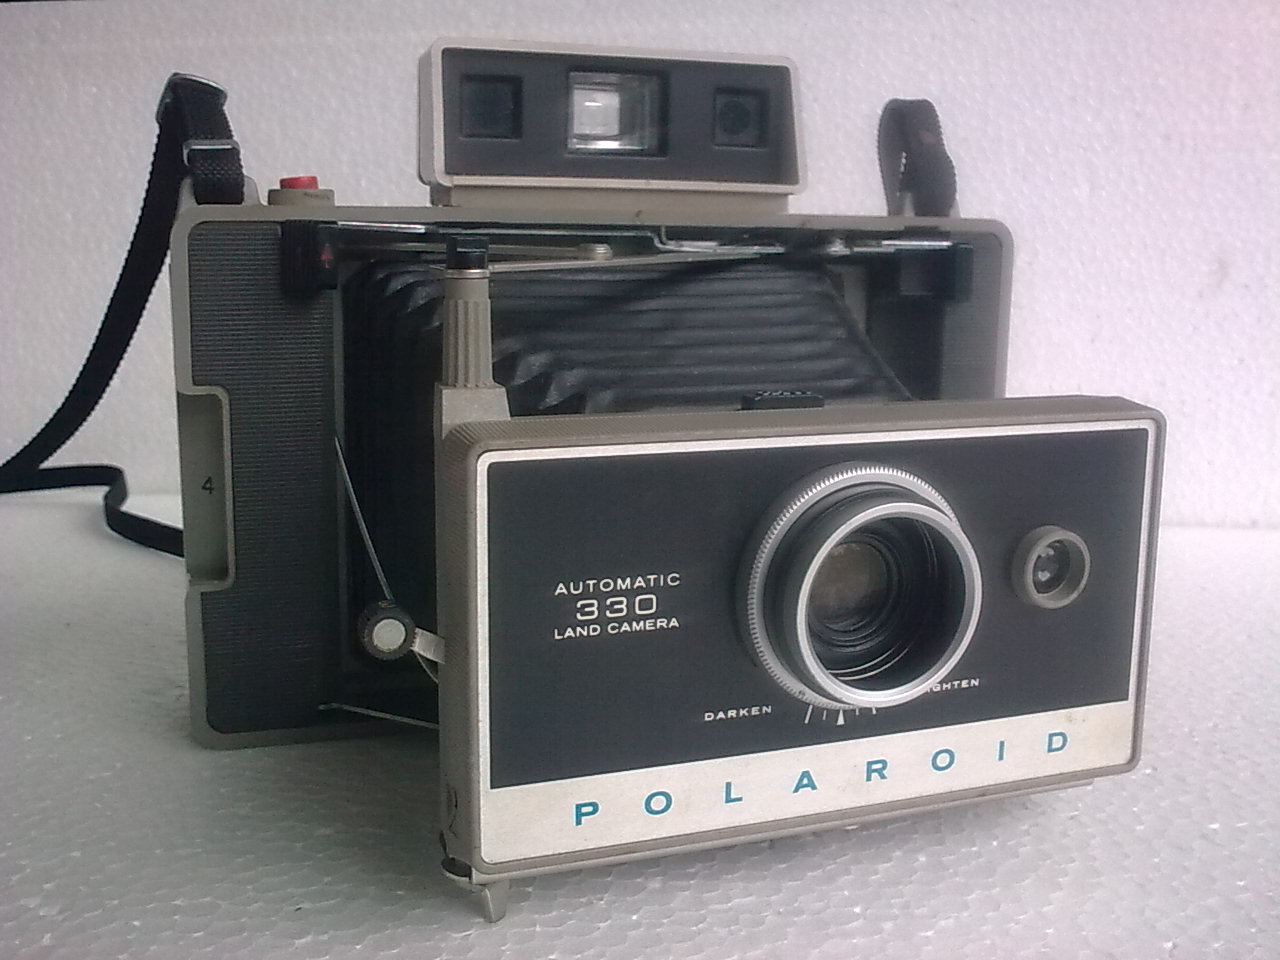 Kamera vintage merk Polaroid automatic330 land camera. 